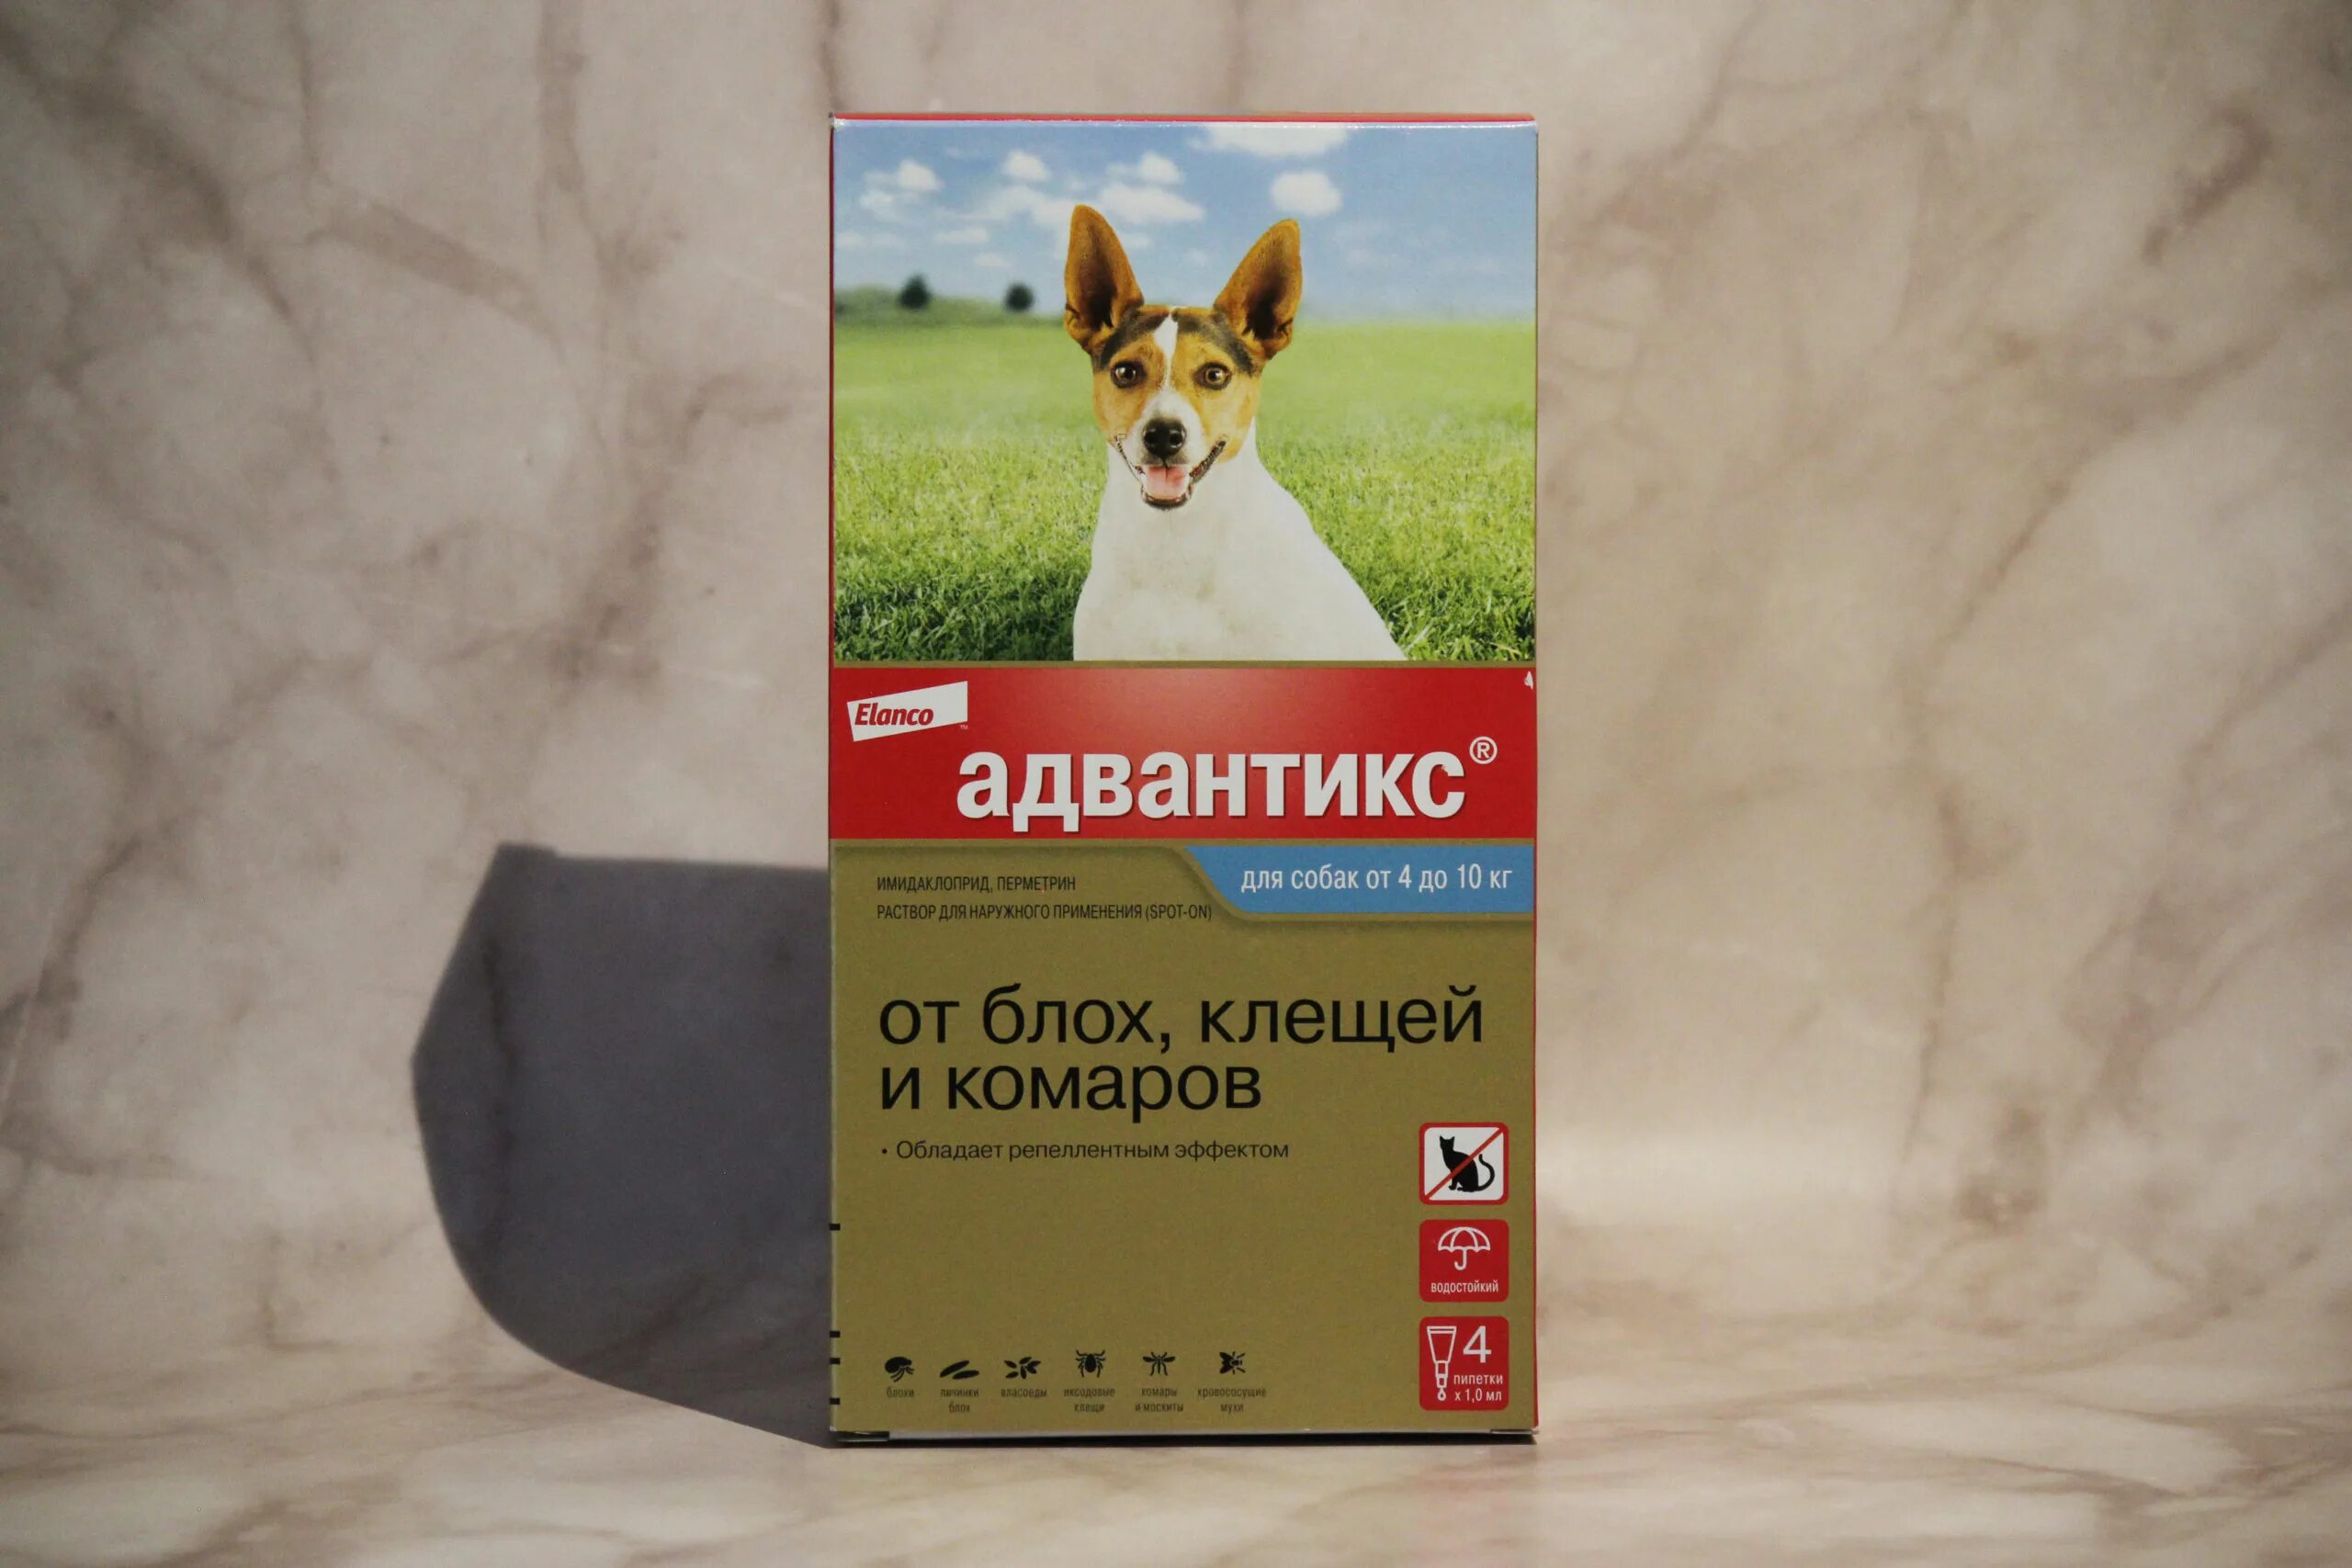 Адвантикс для собак до 4 кг. Адвантикс для собак (4 пипетки) 10-25кг. Адвантикс для собак 10-25. Адвантикс для собак 5 кг. Адвантикс для собак (4 пипетки) 4-10кг.